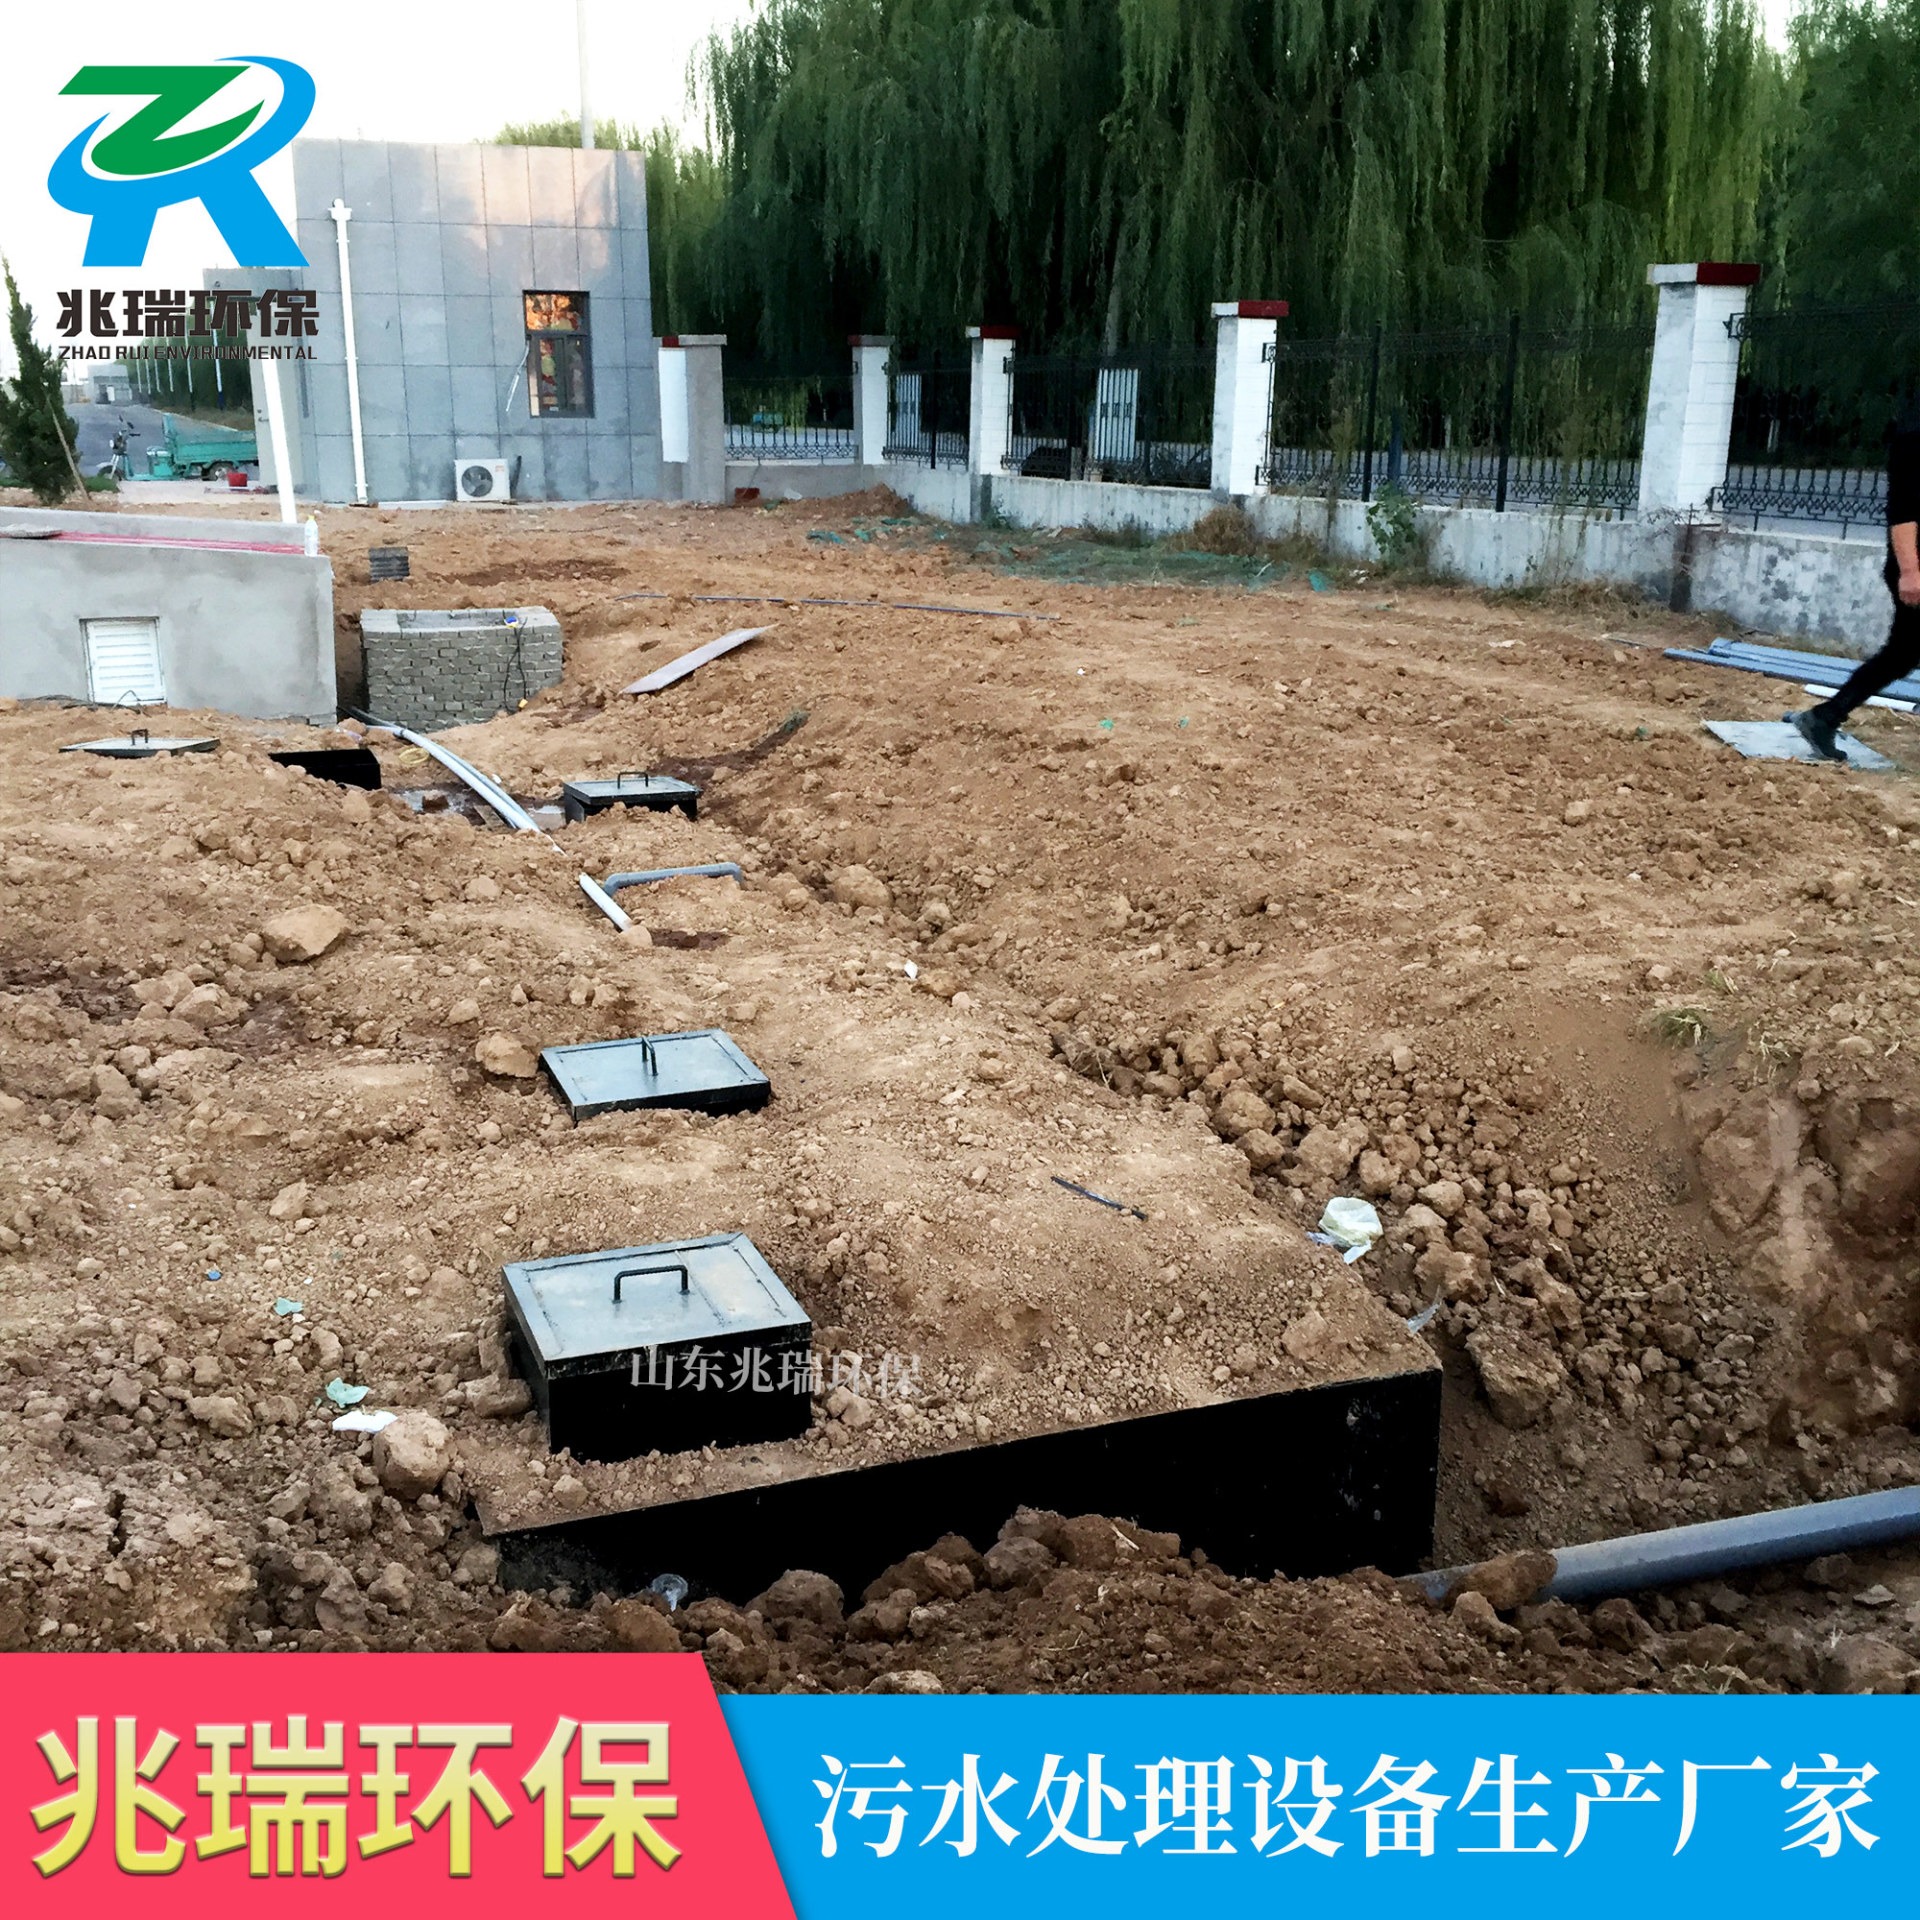 医疗美容污水处理设备  一体化污水处理设备厂家制造 兆瑞环保潍坊